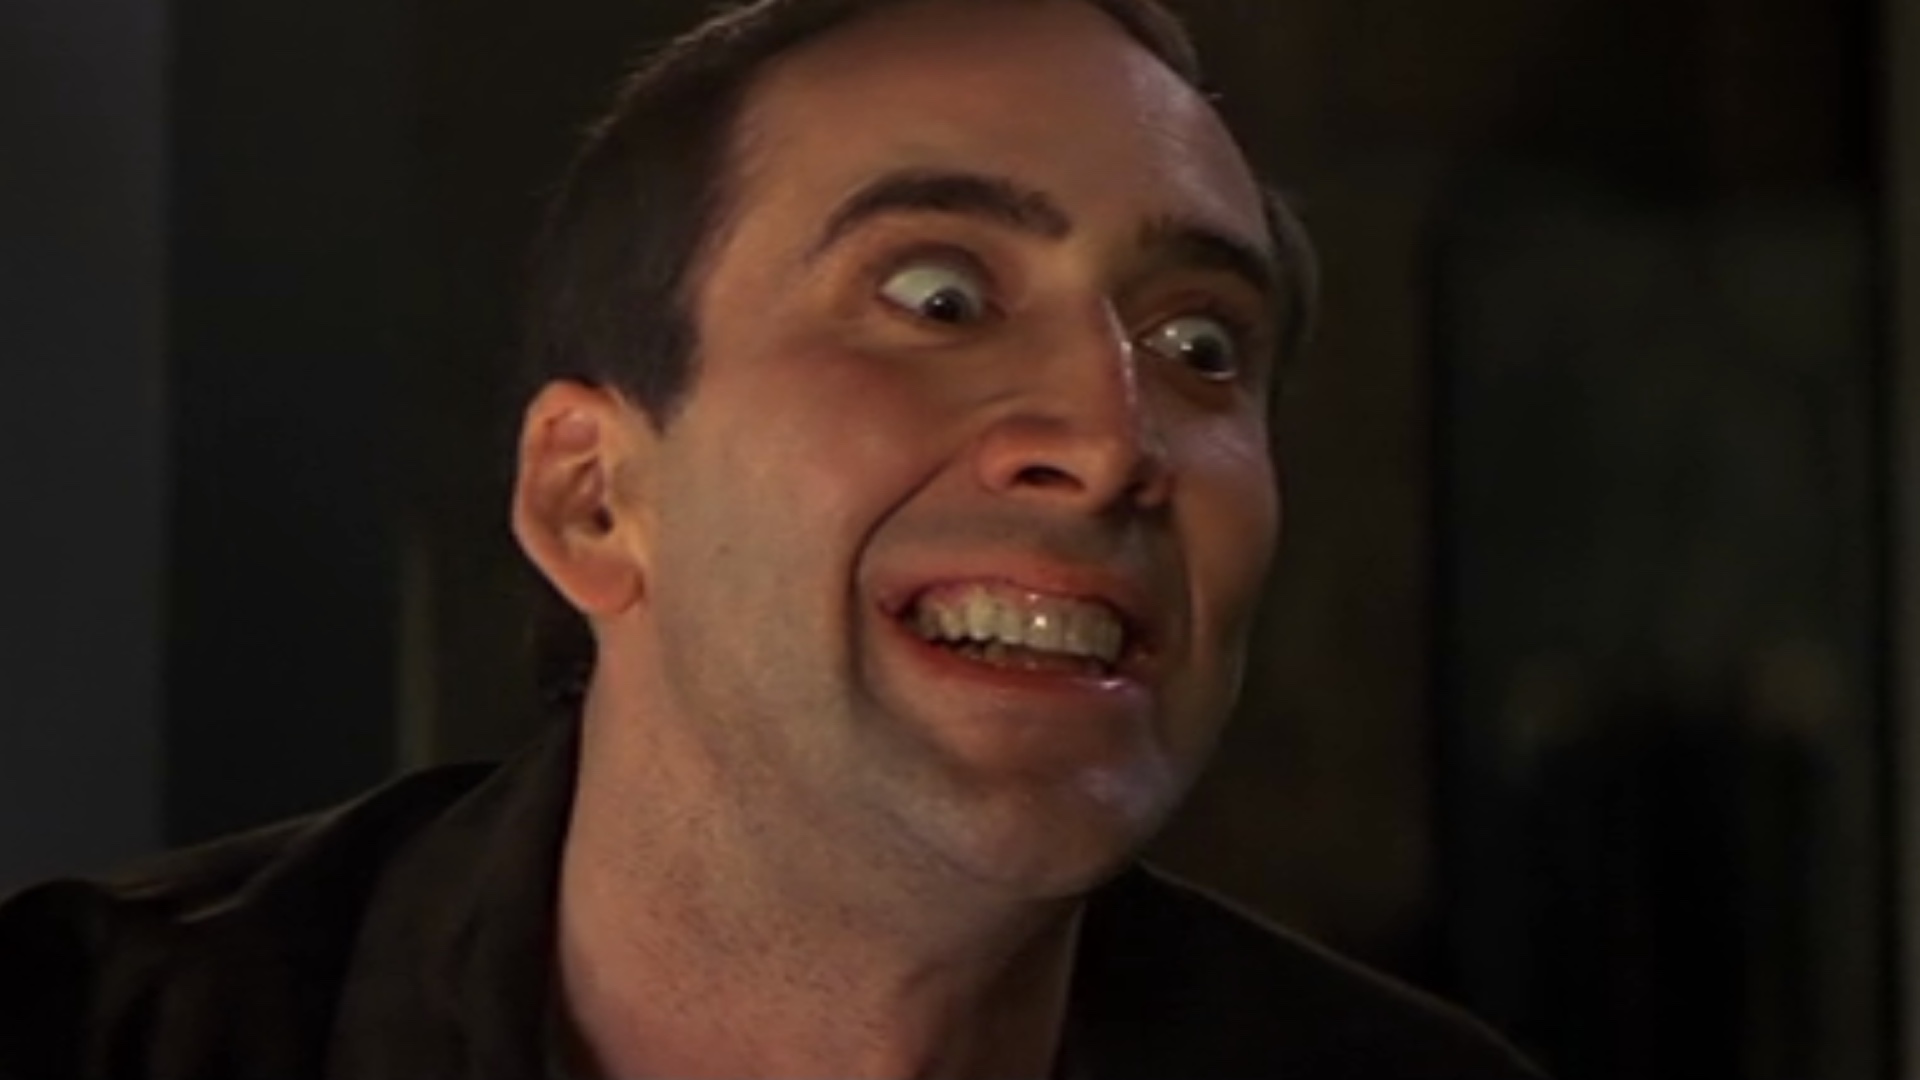 Nicolas Cage Contracara Face Off sonrisa tenebrosa